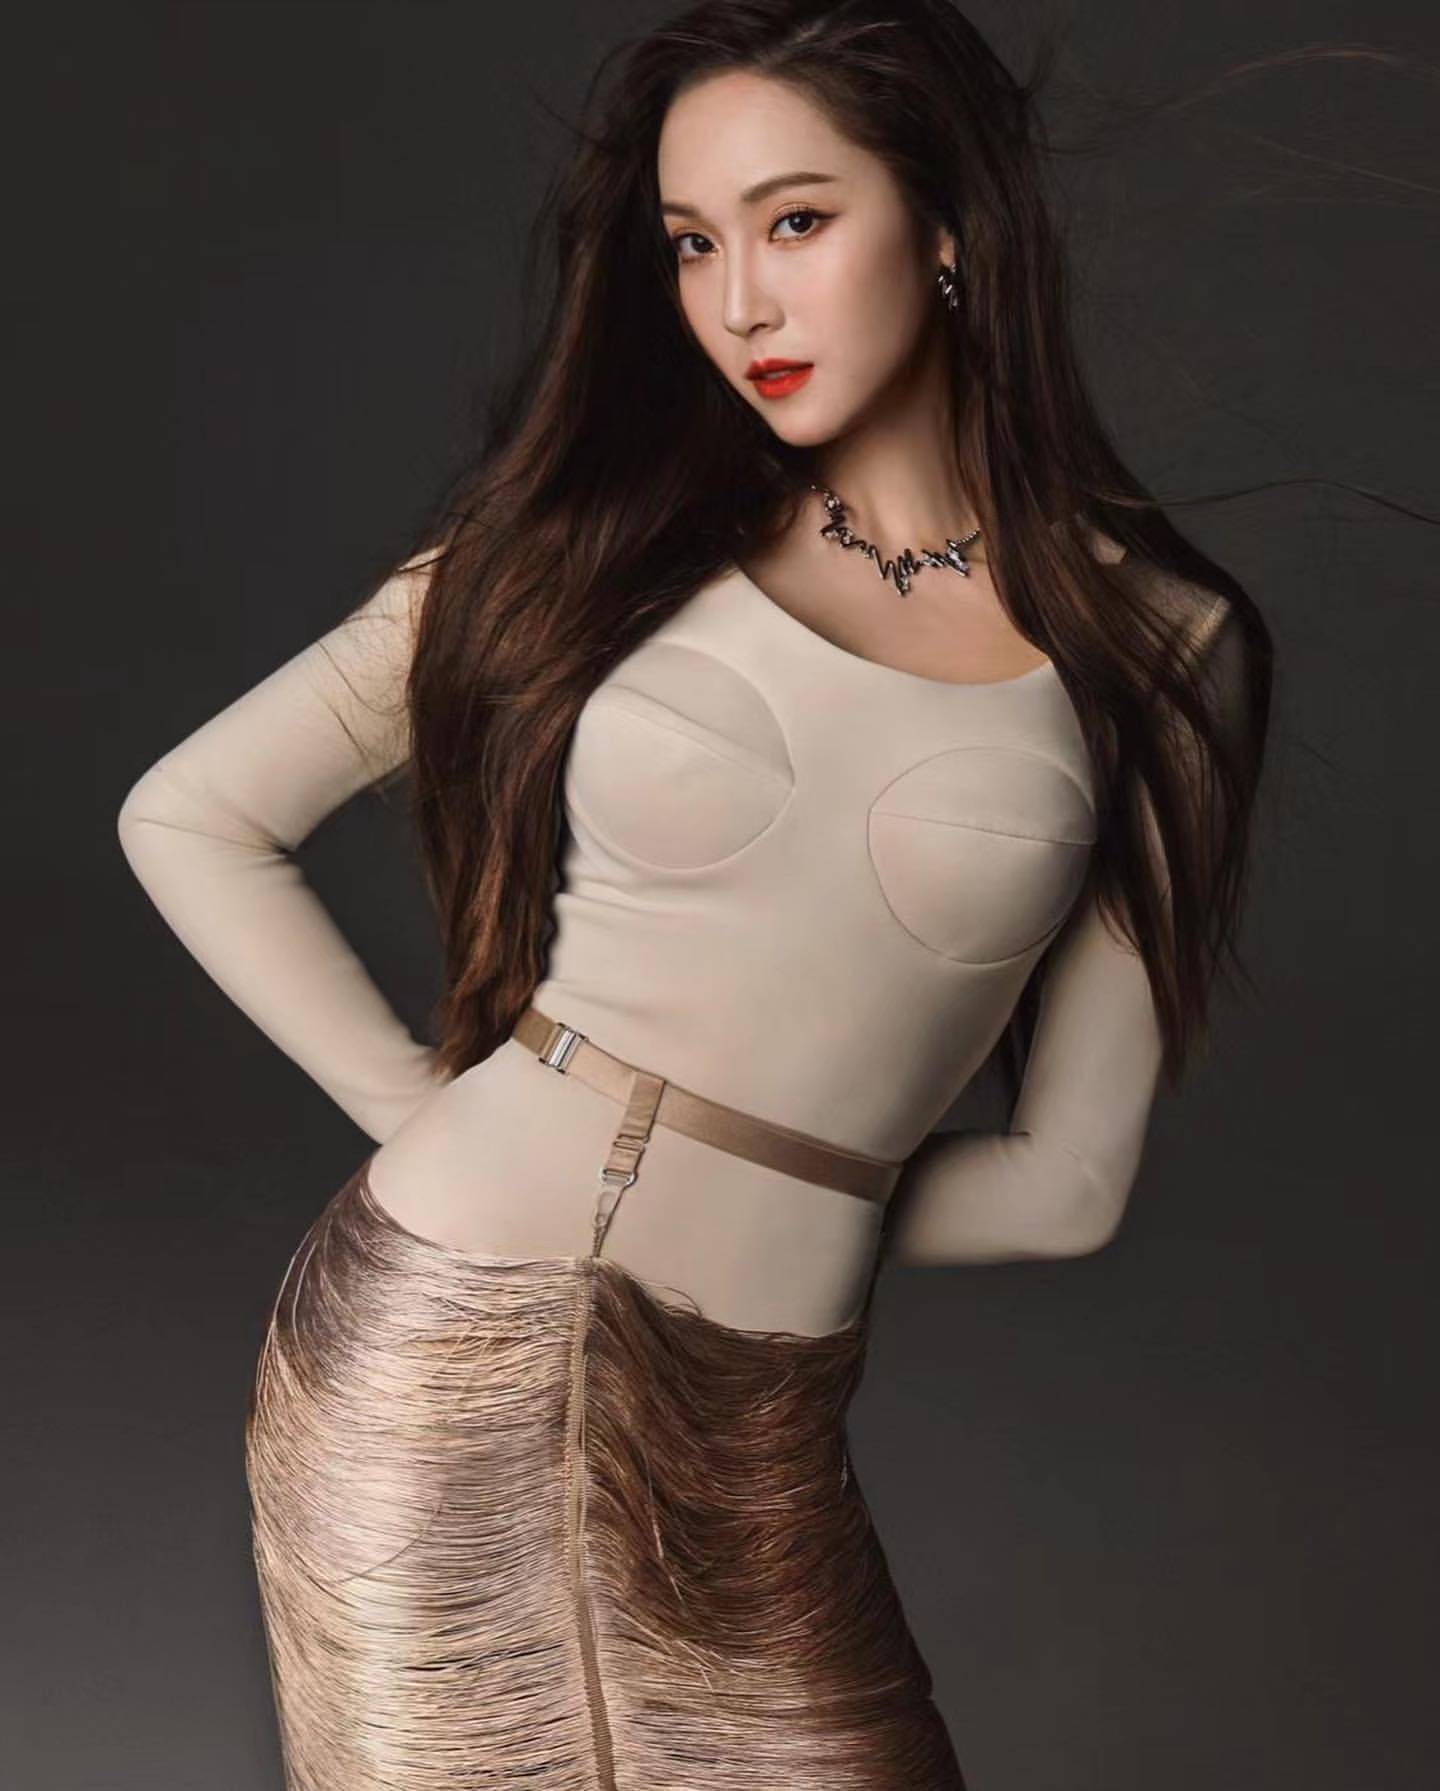 郑秀妍的诱惑魅力,性感的可乐瓶身材,颠覆传统风格的女神美